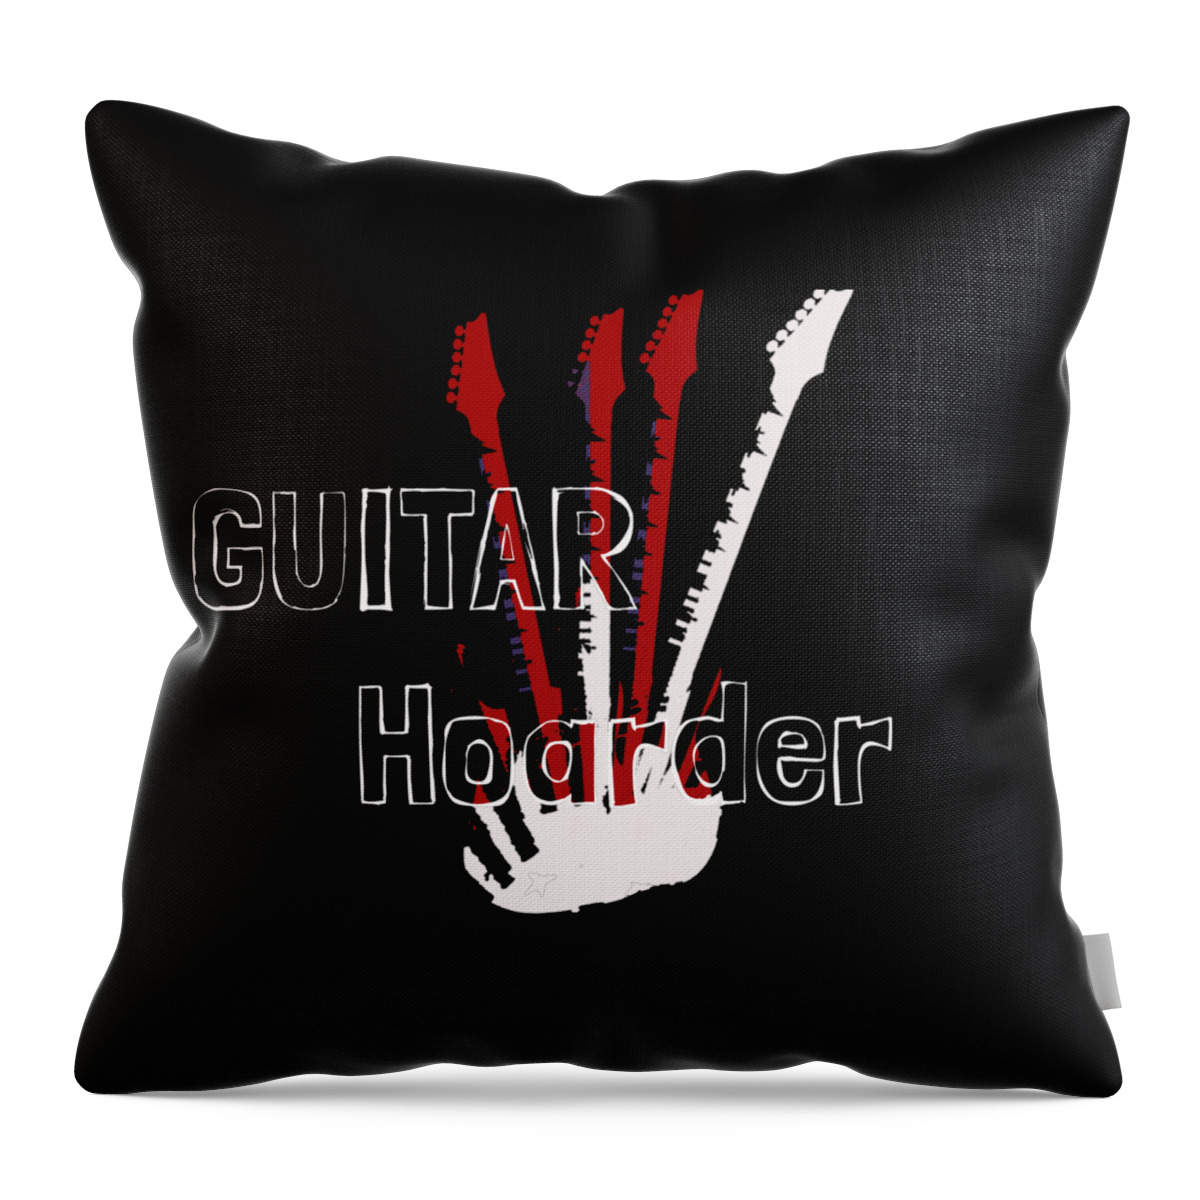 Guitar Throw Pillow featuring the digital art Guitar Hoarder by Guitarwacky Fine Art